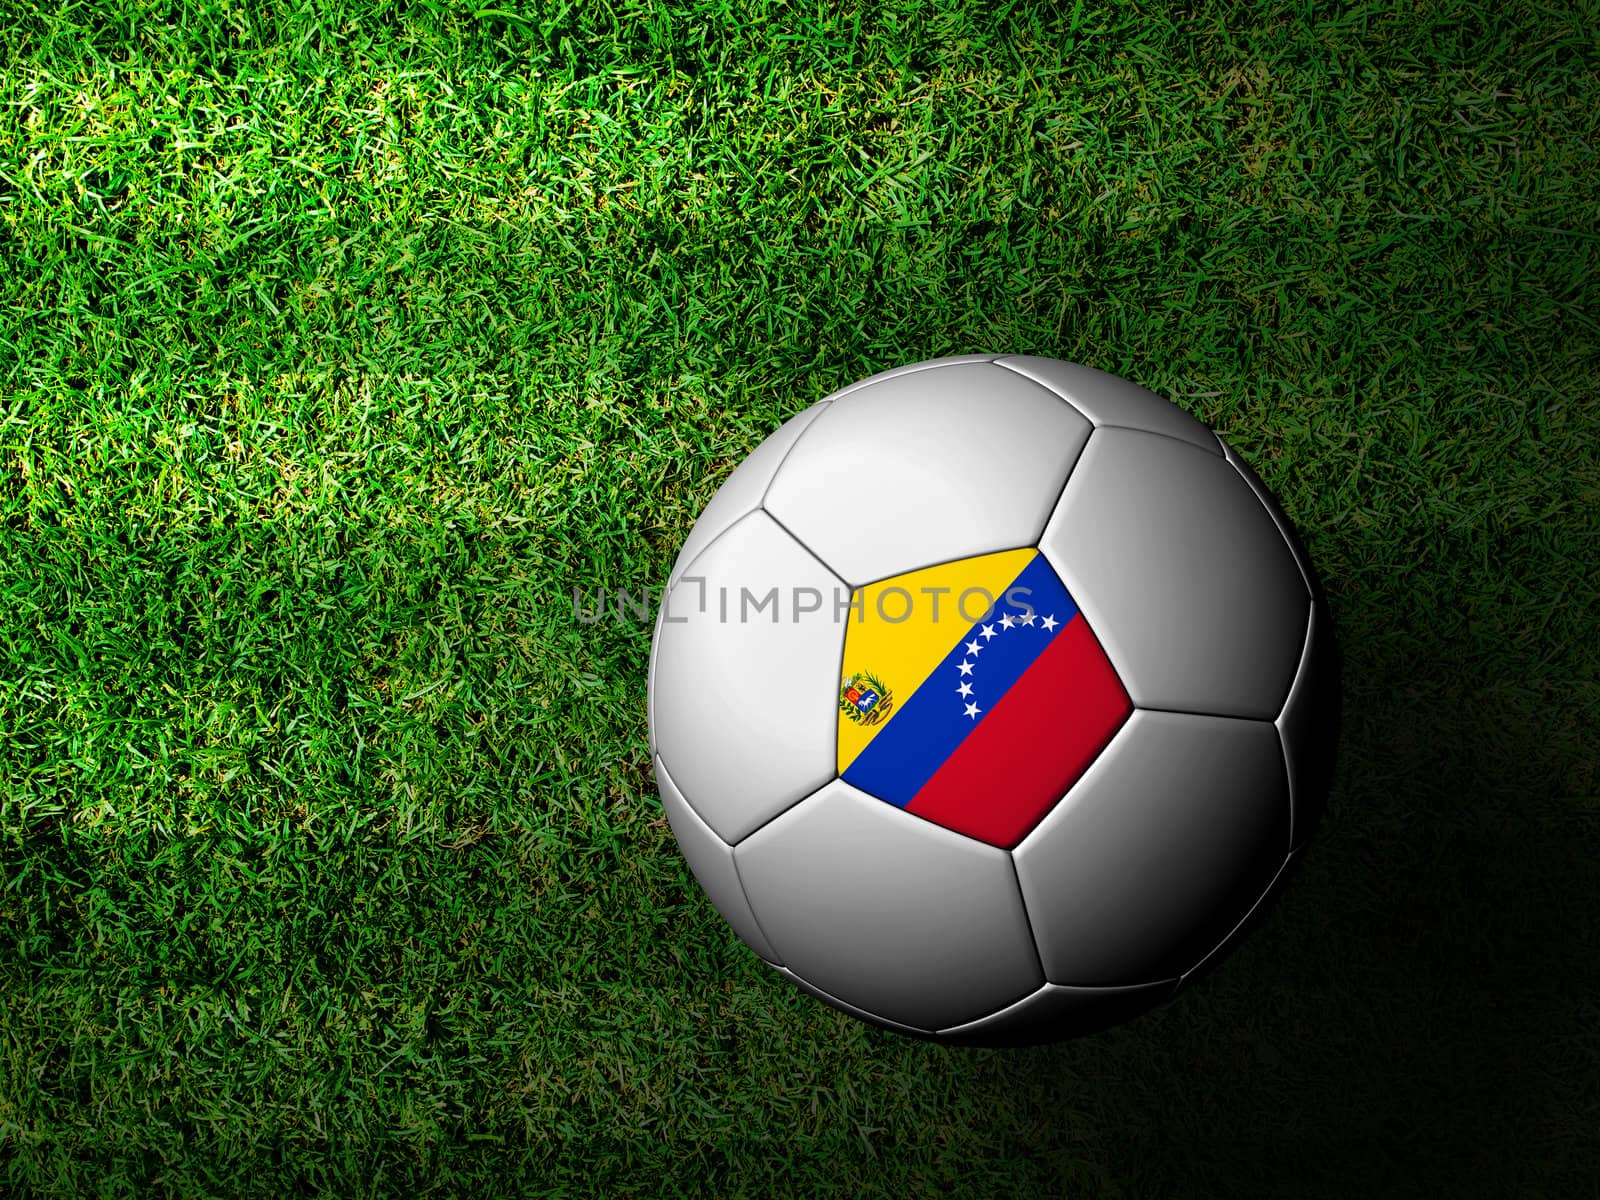 Venezuela  Flag Pattern 3d rendering of a soccer ball in green grass